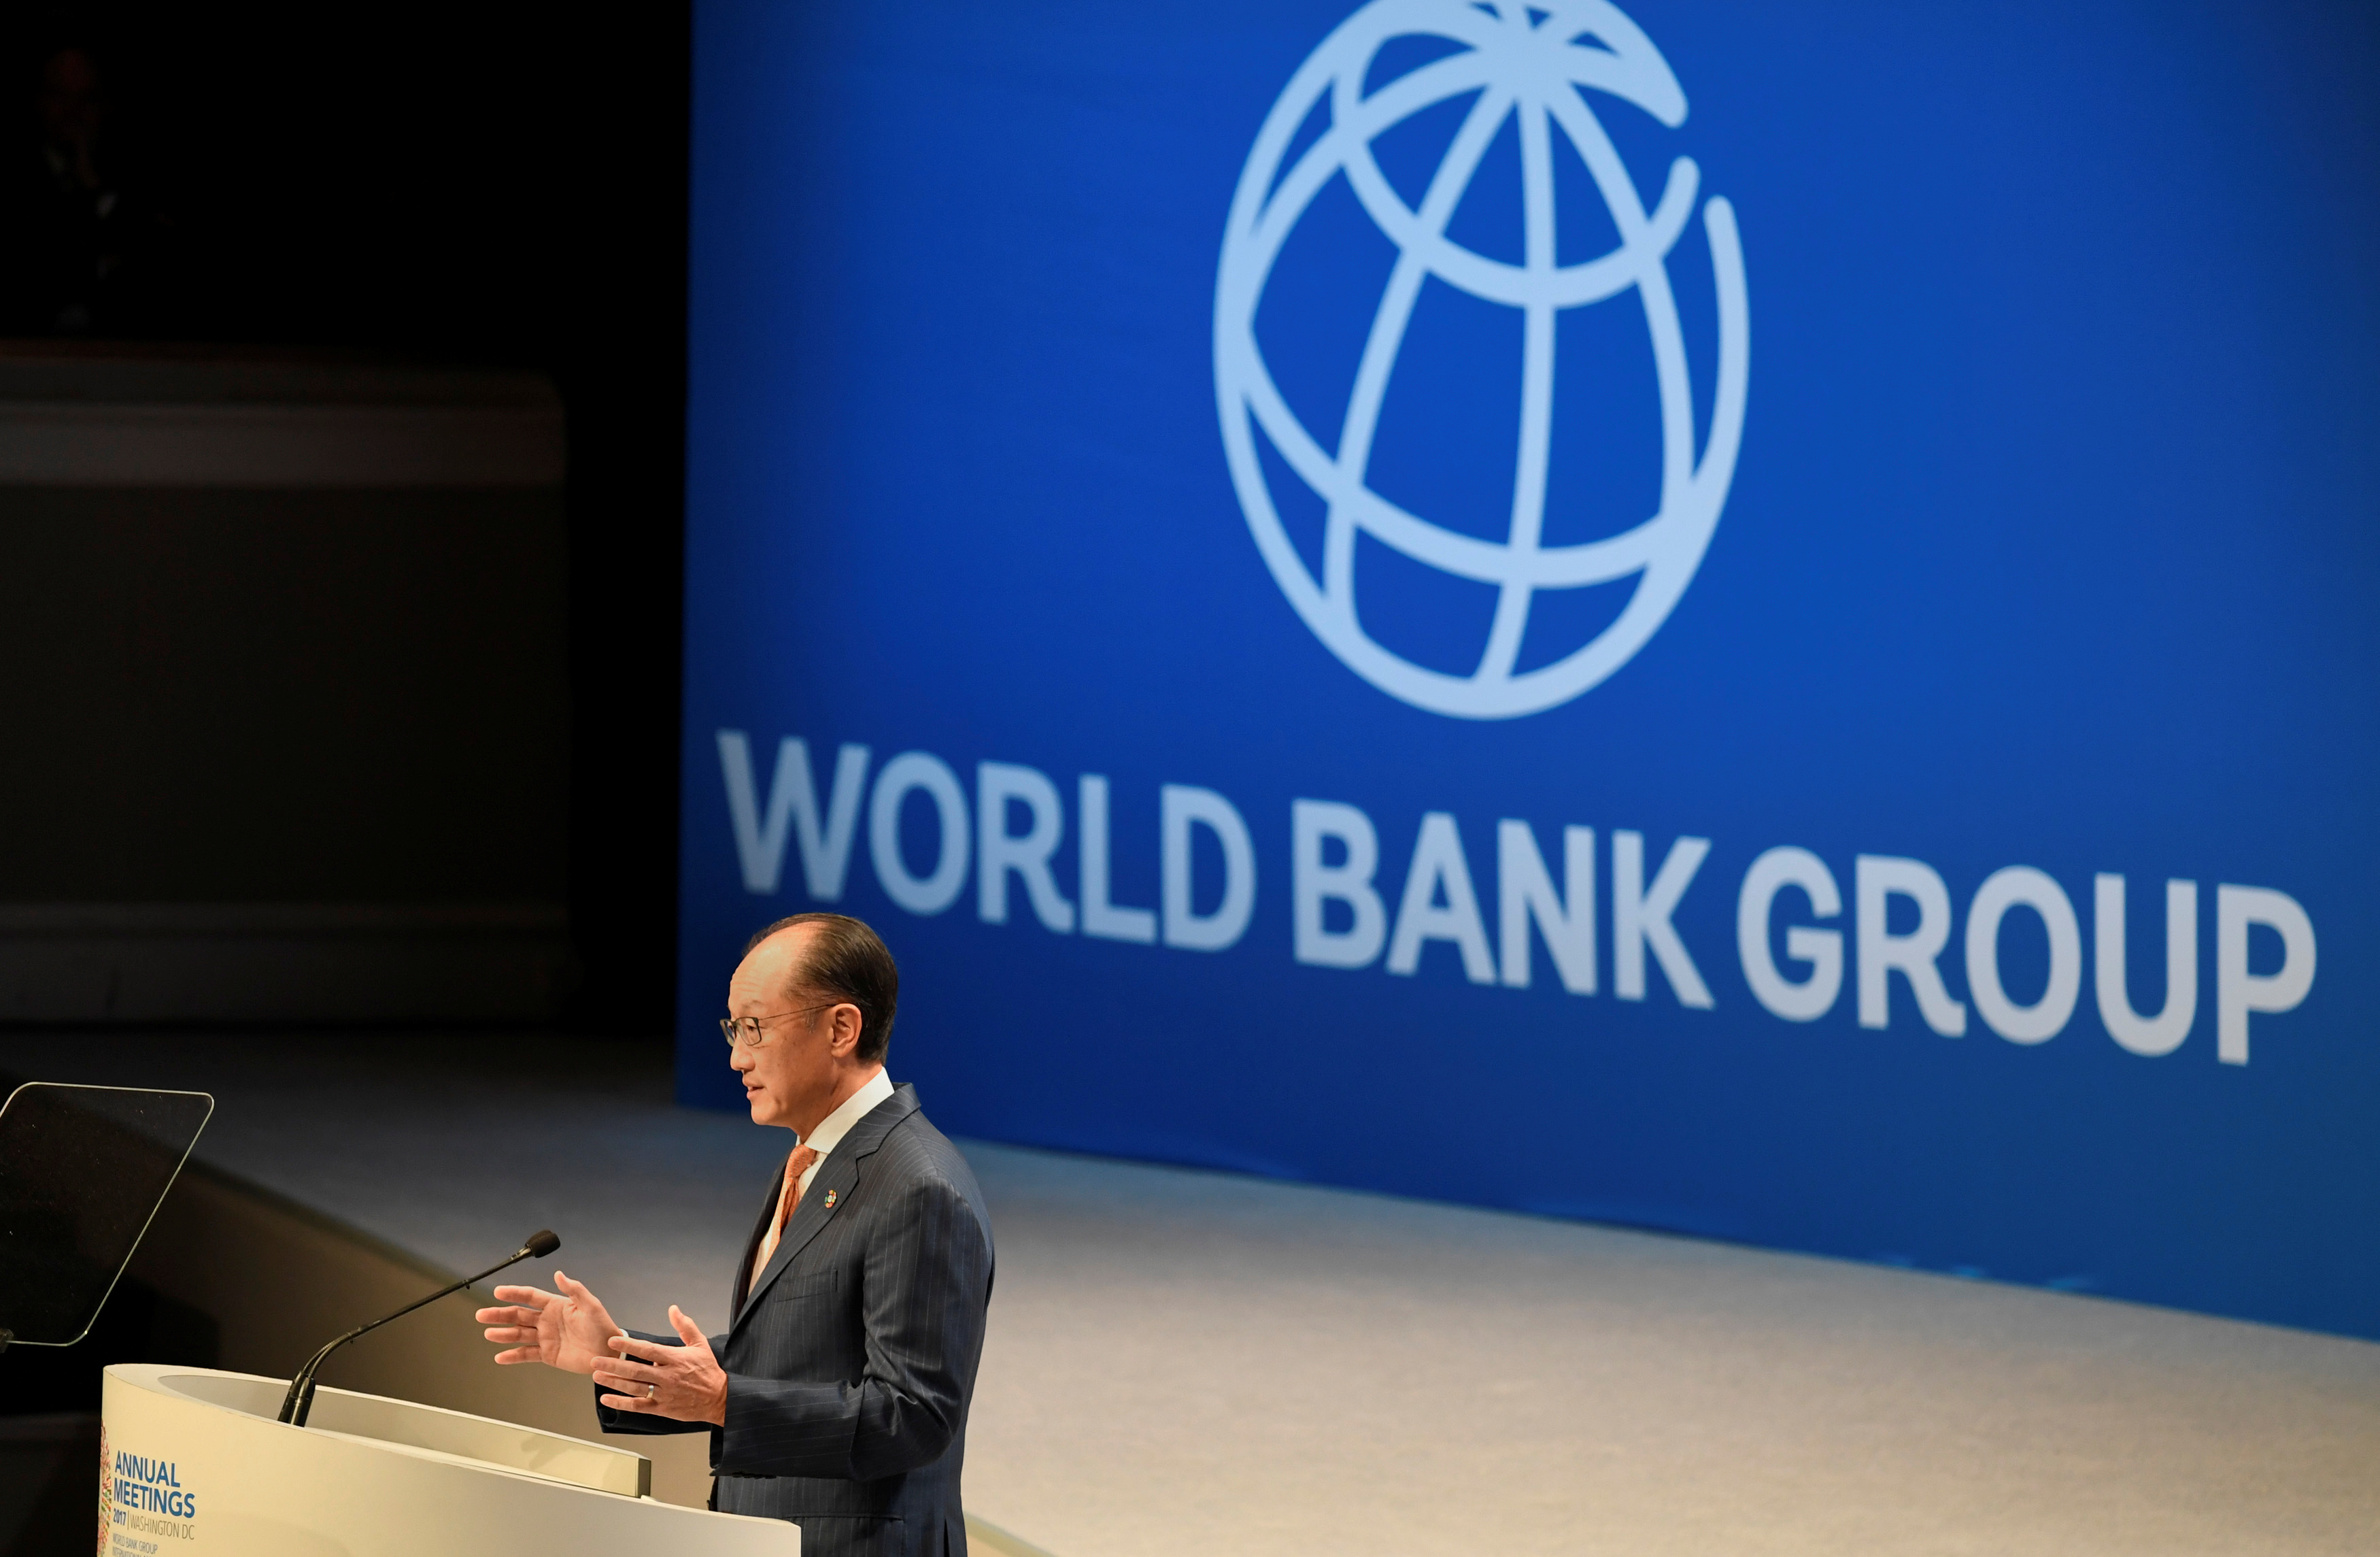 1 всемирный банк. Всемирного банка (the World Bank). Всемирный банк флаг. Всемирный банк и Россия. Логотип Всемирного банка.